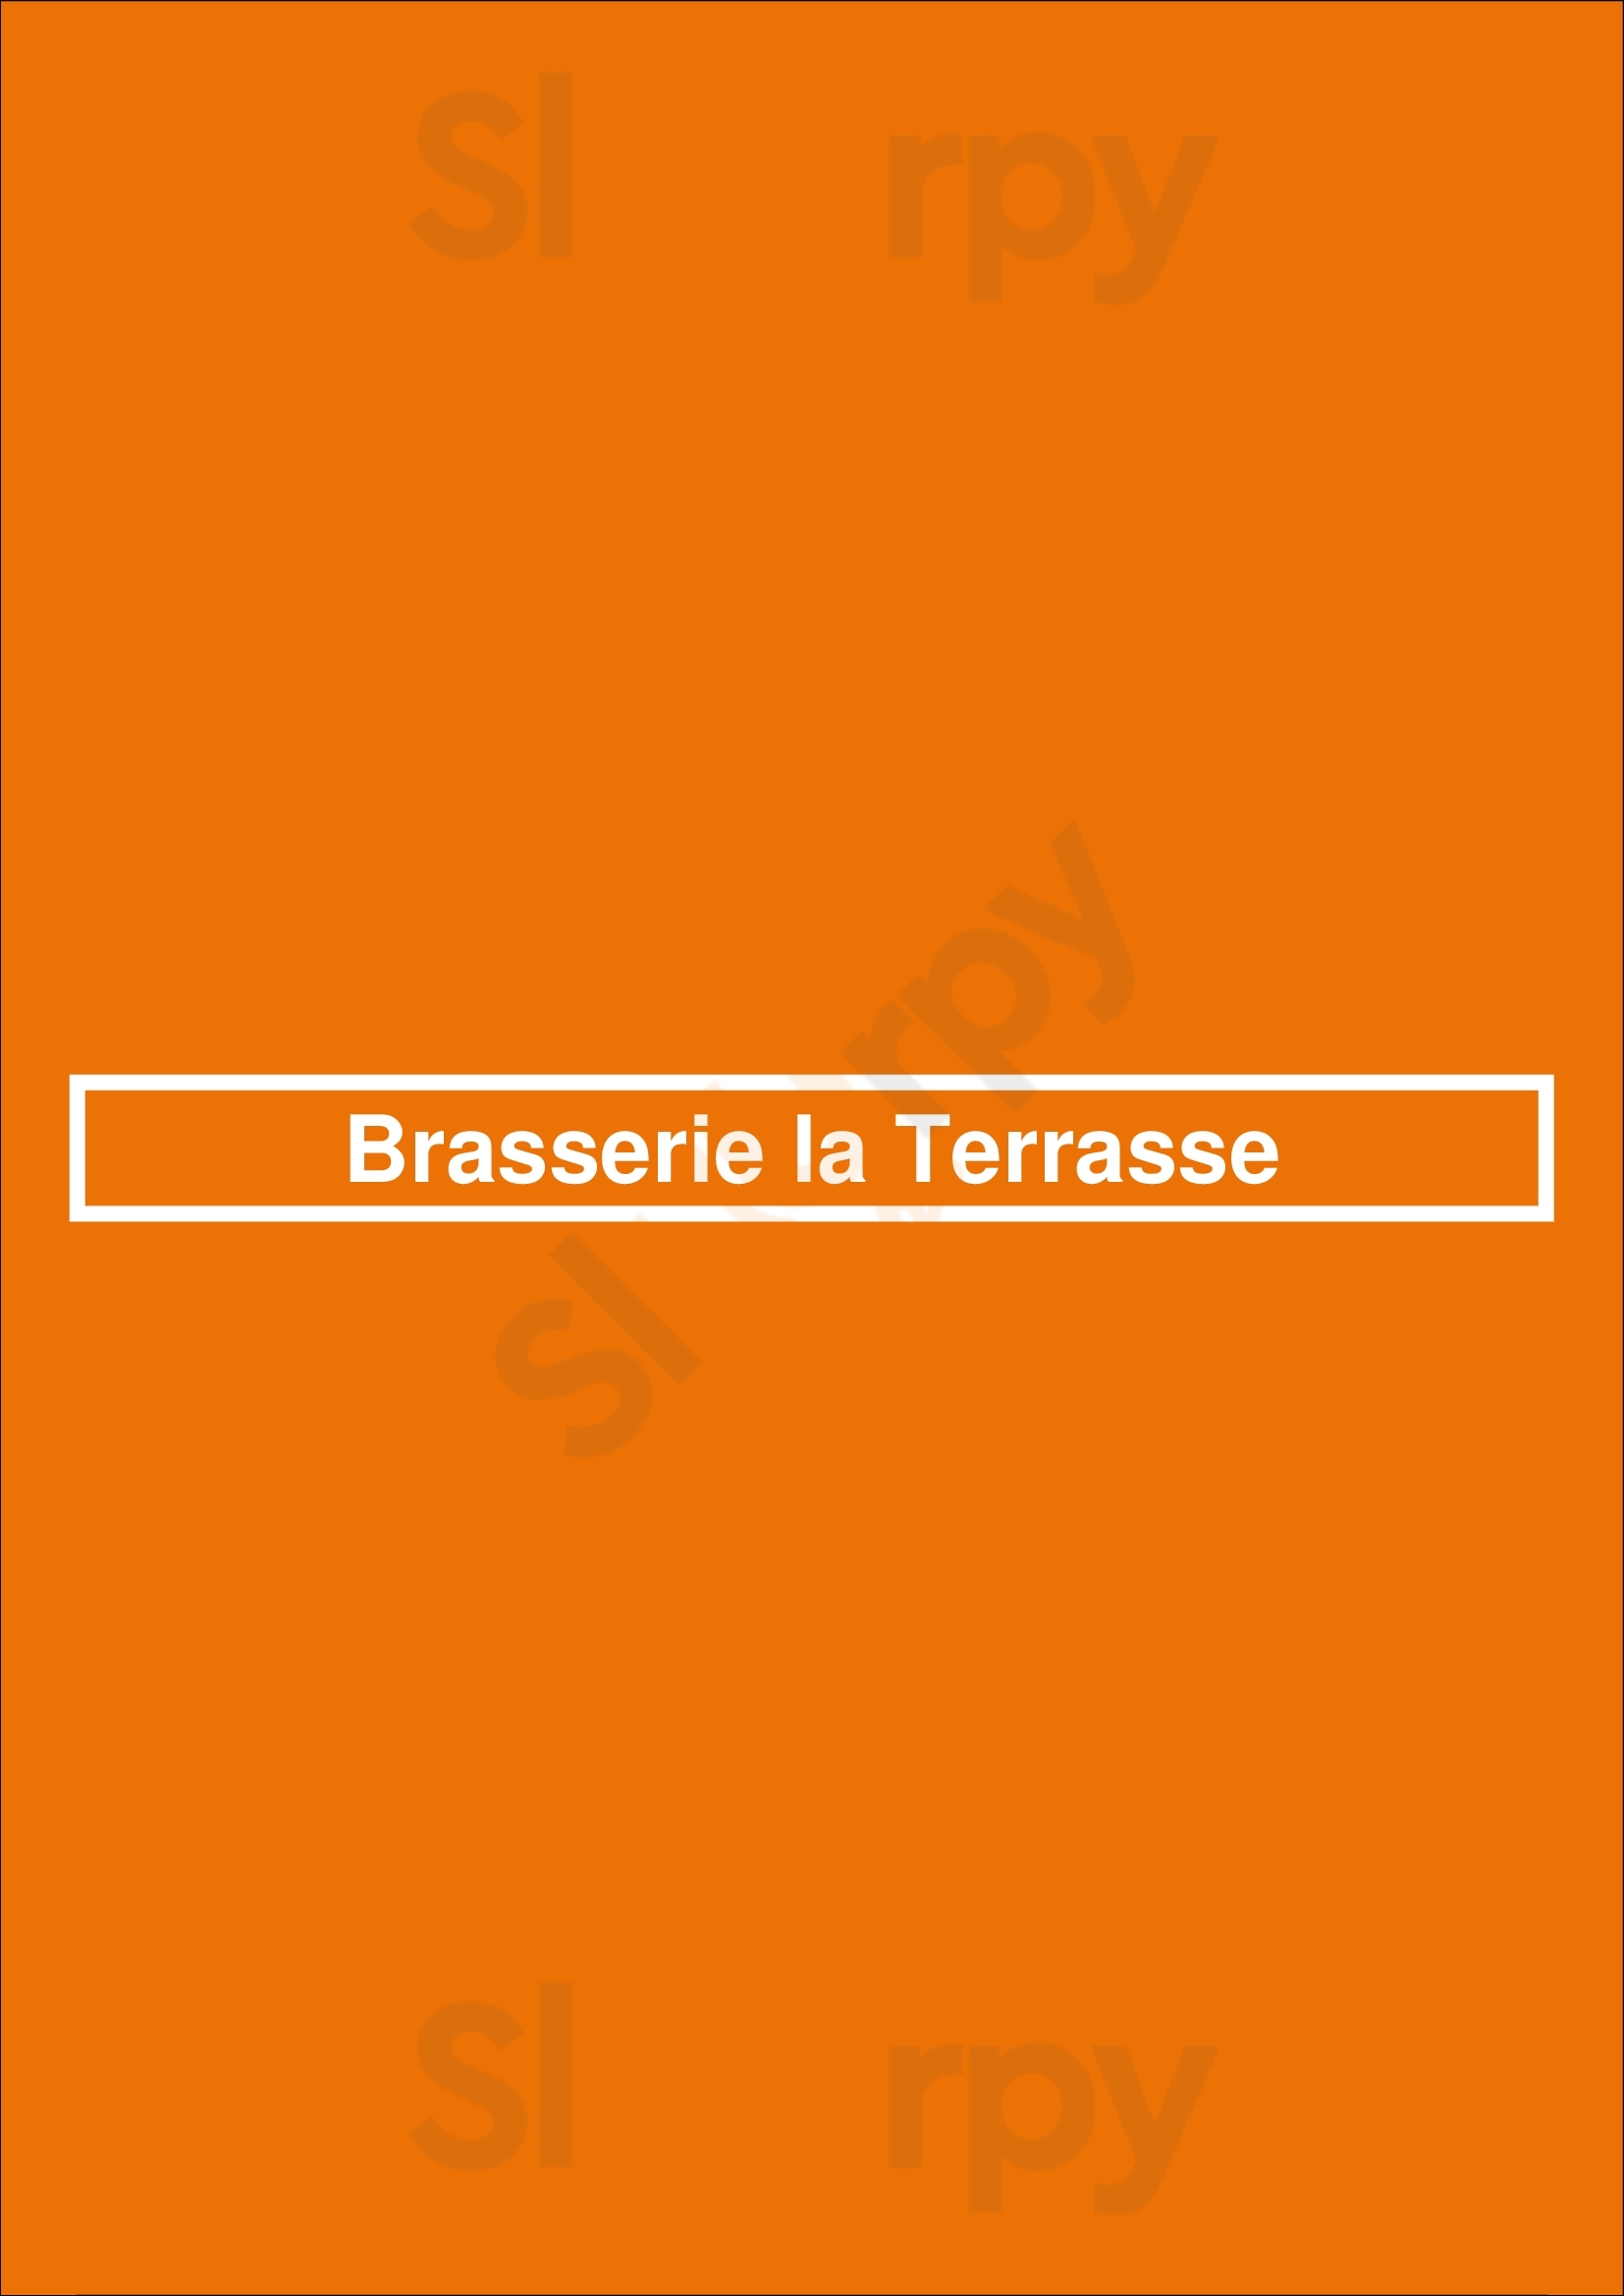 Brasserie La Terrasse Etterbeek Menu - 1